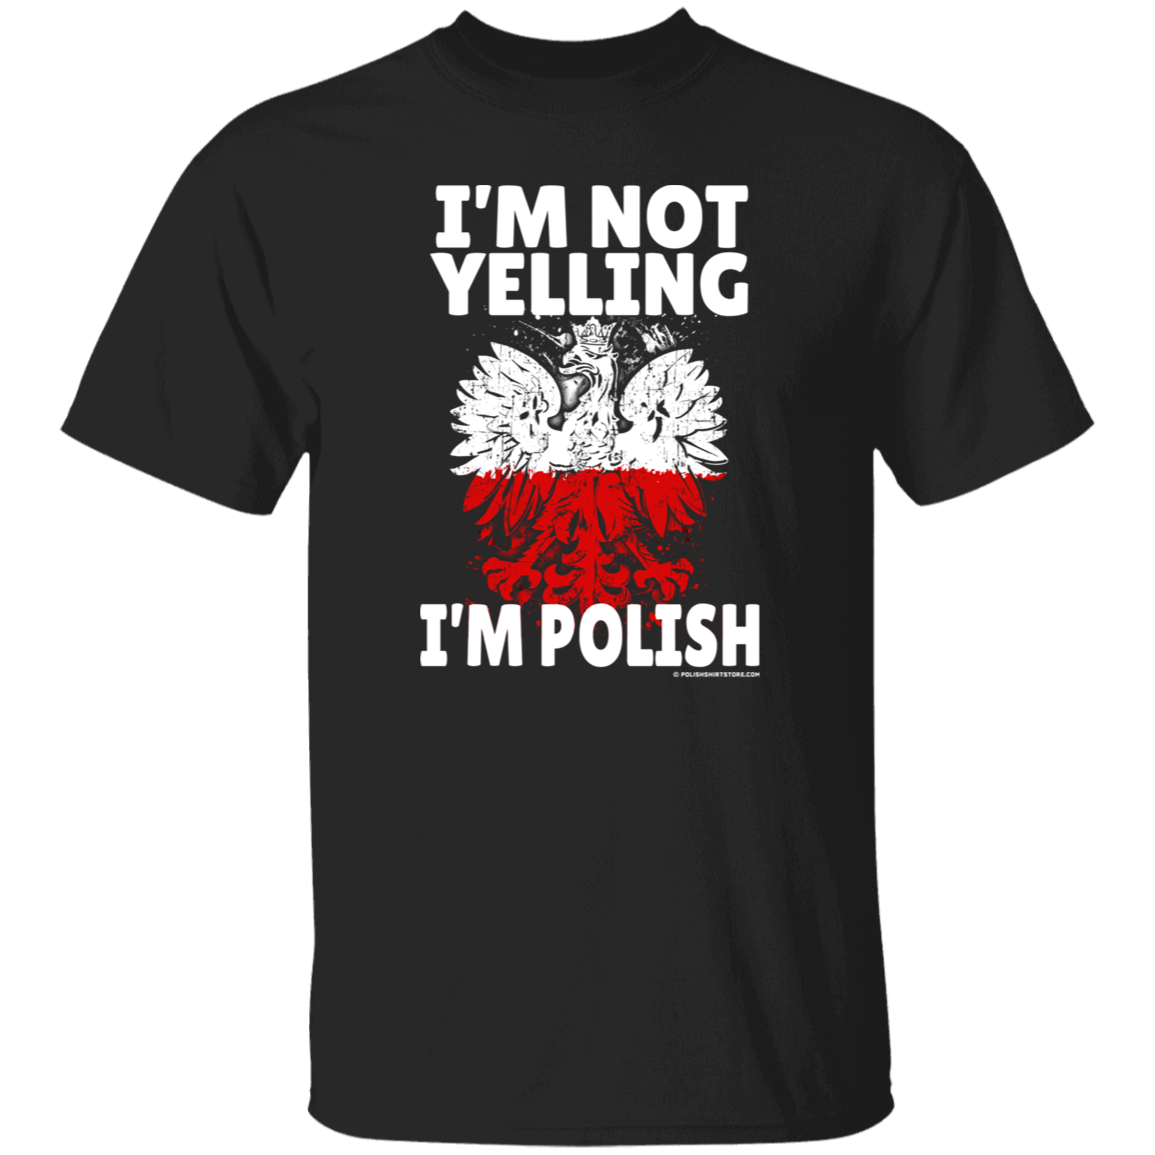 I'm Not Yelling I'm Polish Apparel CustomCat G500 5.3 oz. T-Shirt Black S